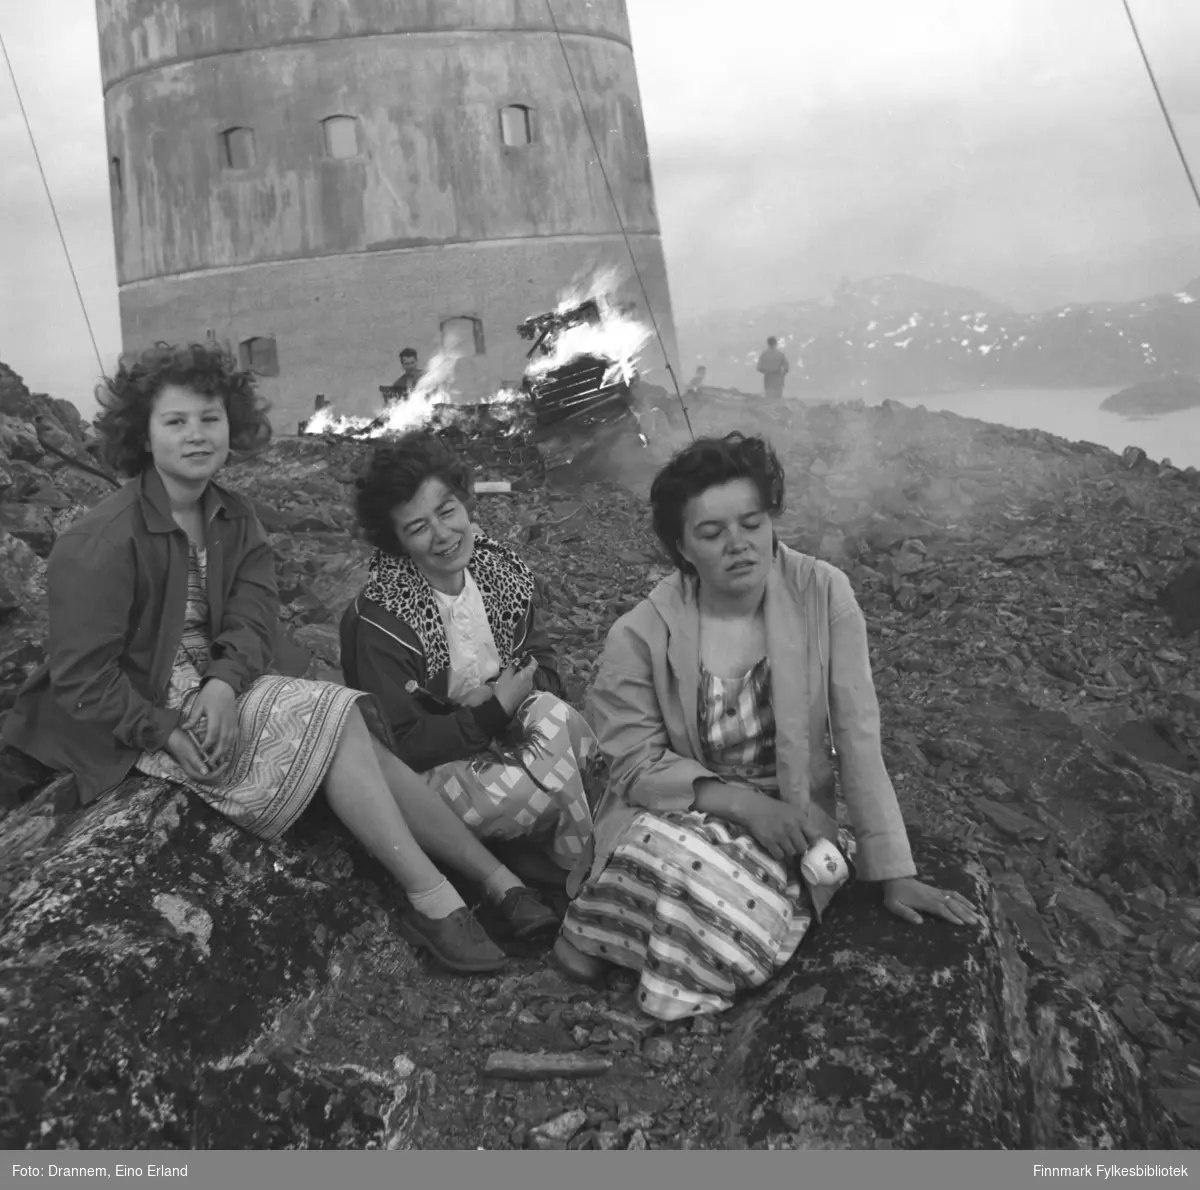 En del folk på fjellet Tyven ovenfor Hammerfest. De er fra venstre: Turid Karikoski, Jenny Drannem, Maija Hoikka (født Gerasimoff). Bildet er muligens fra Sankthansaften.